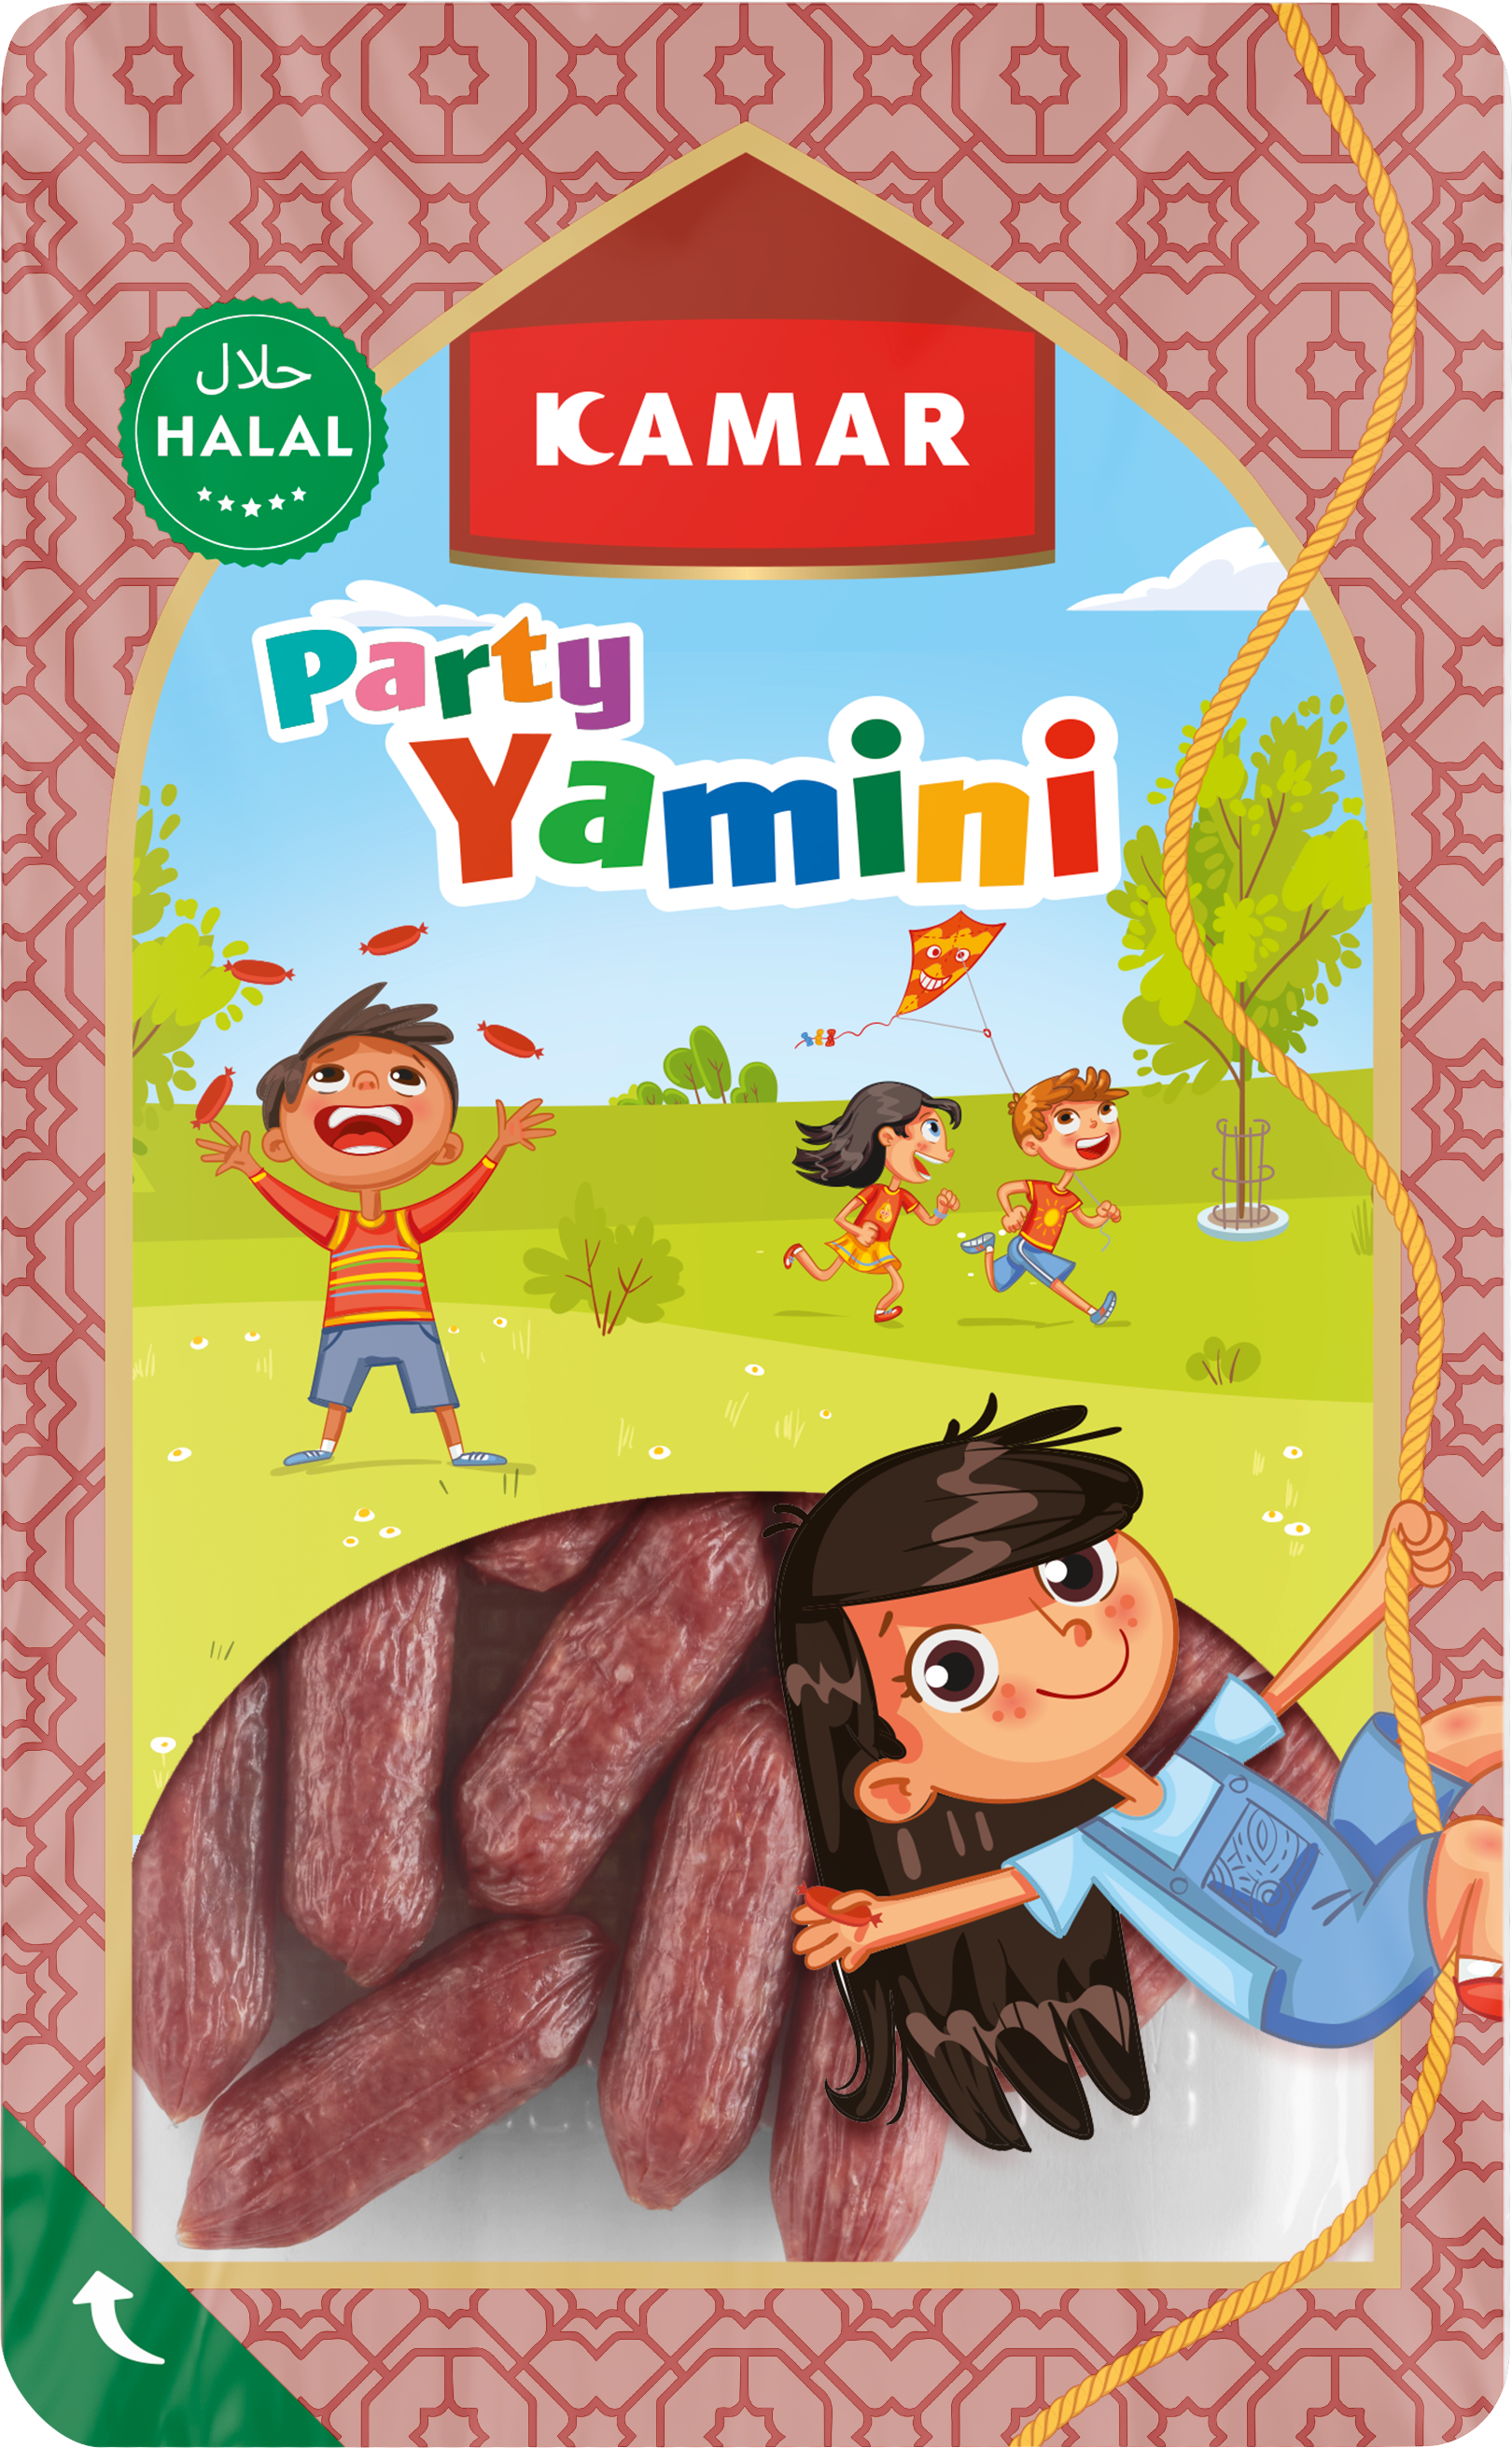 Meemken Kamar Kids Party Yamini Packshot 01 Kopie